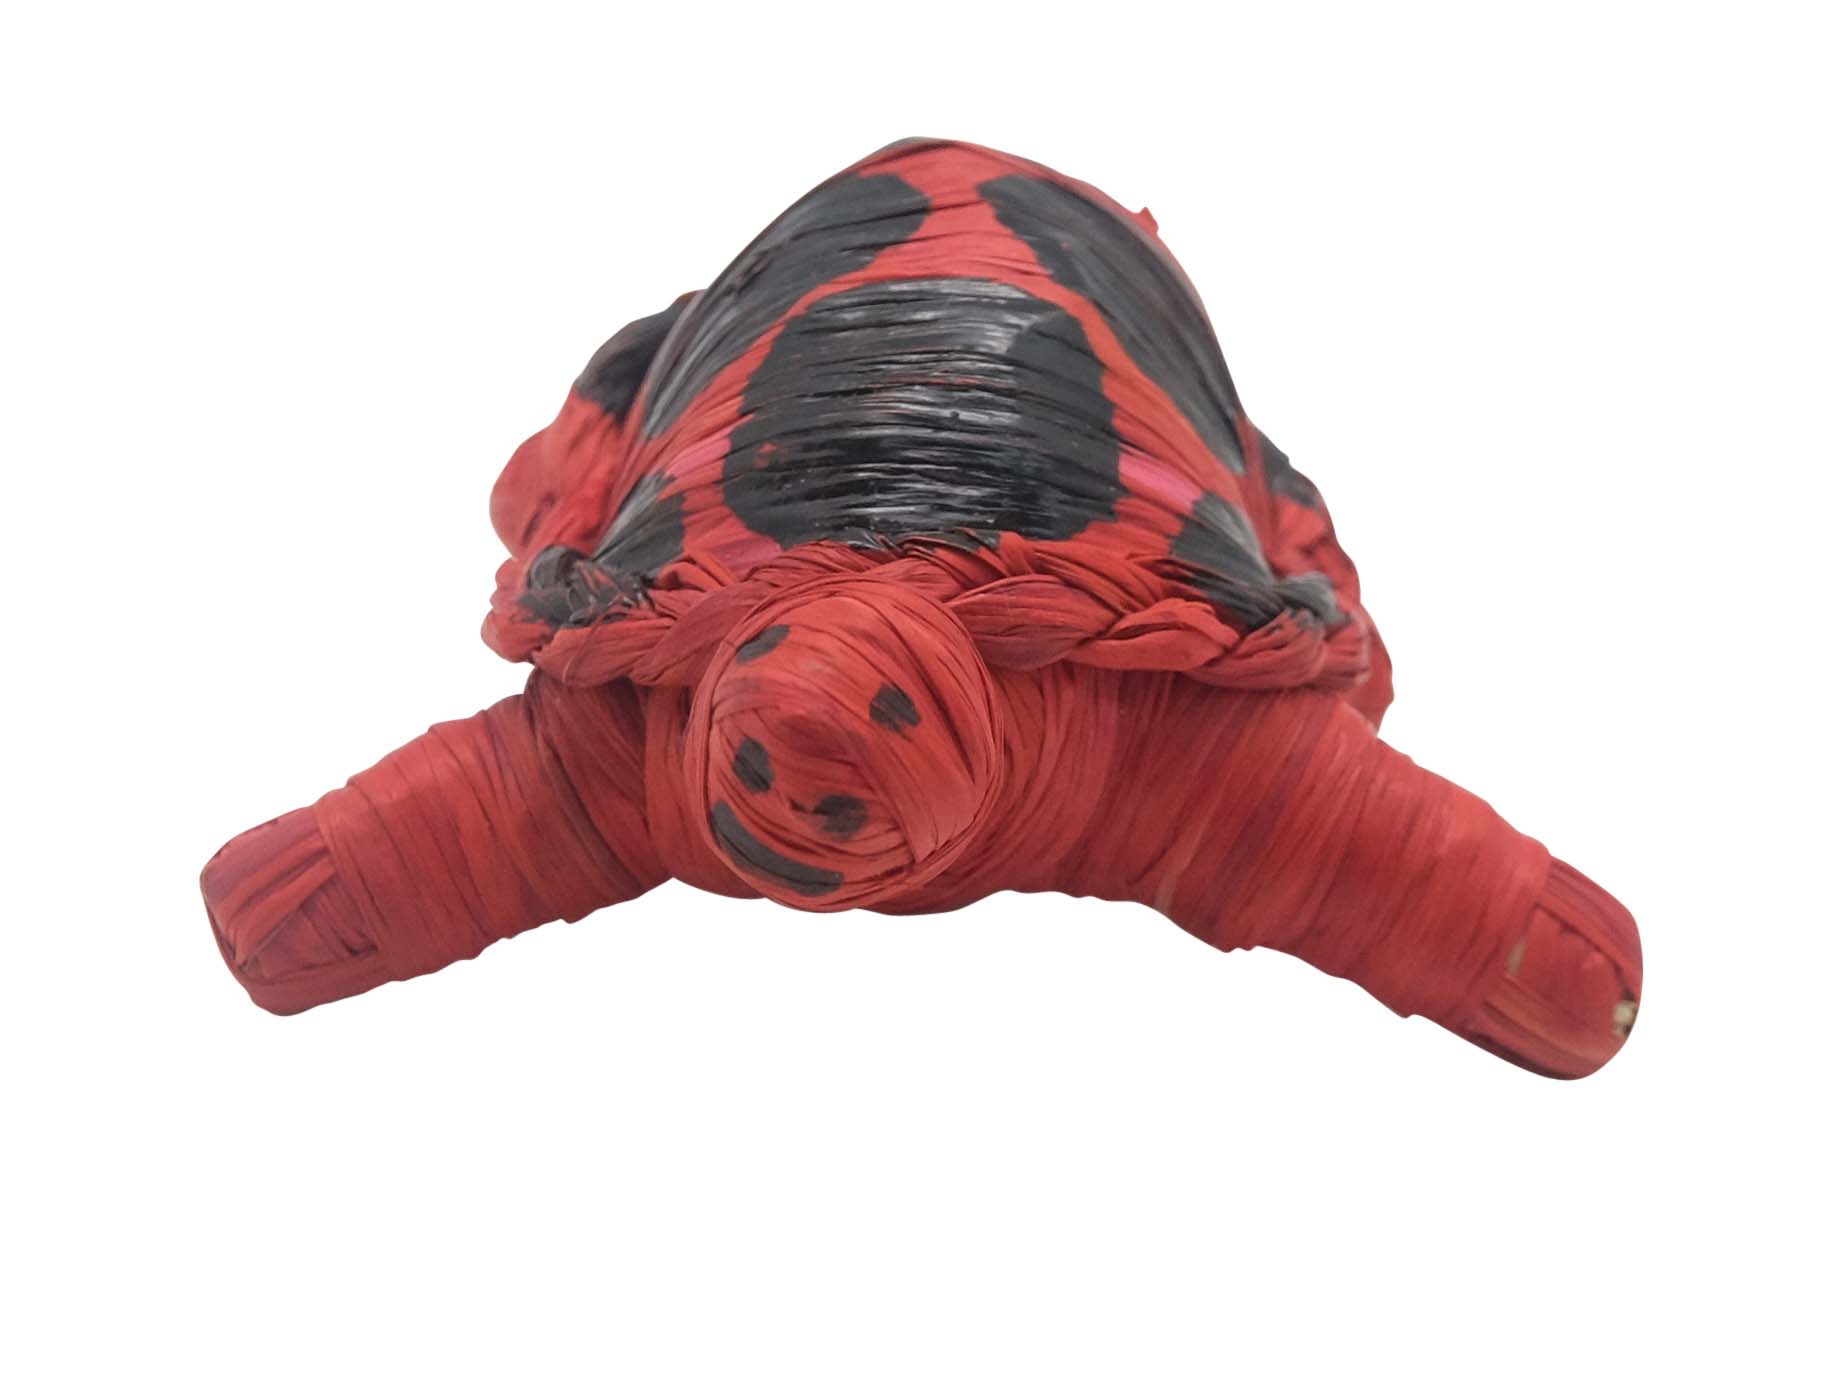 Raffia Turtle: Small: Assorted - 1347-TUS-AS (9UK8)